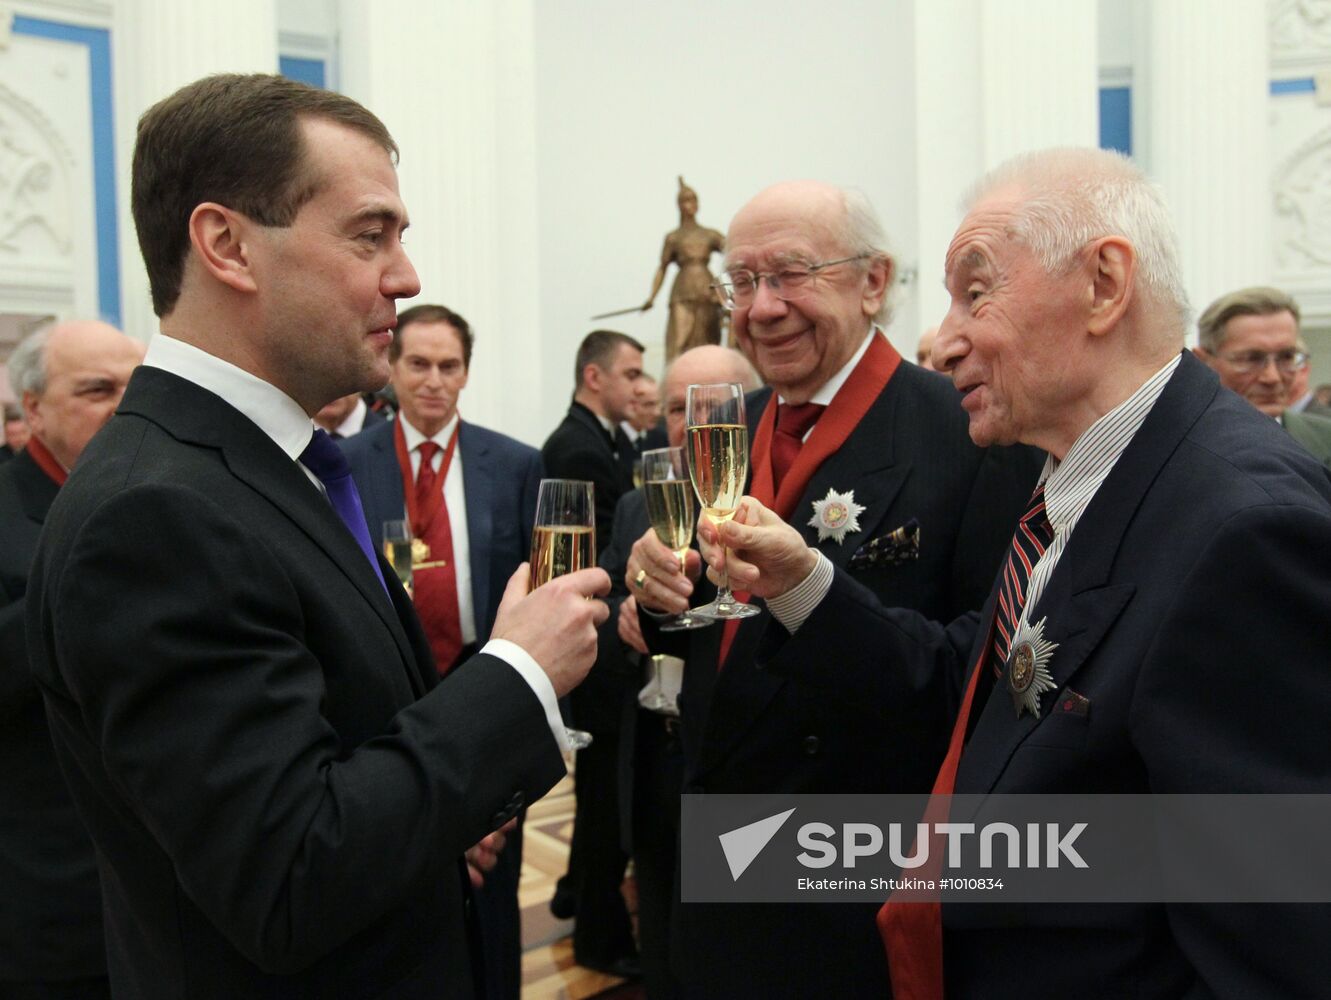 Dmitry Medvedev presents awards in Kremlin